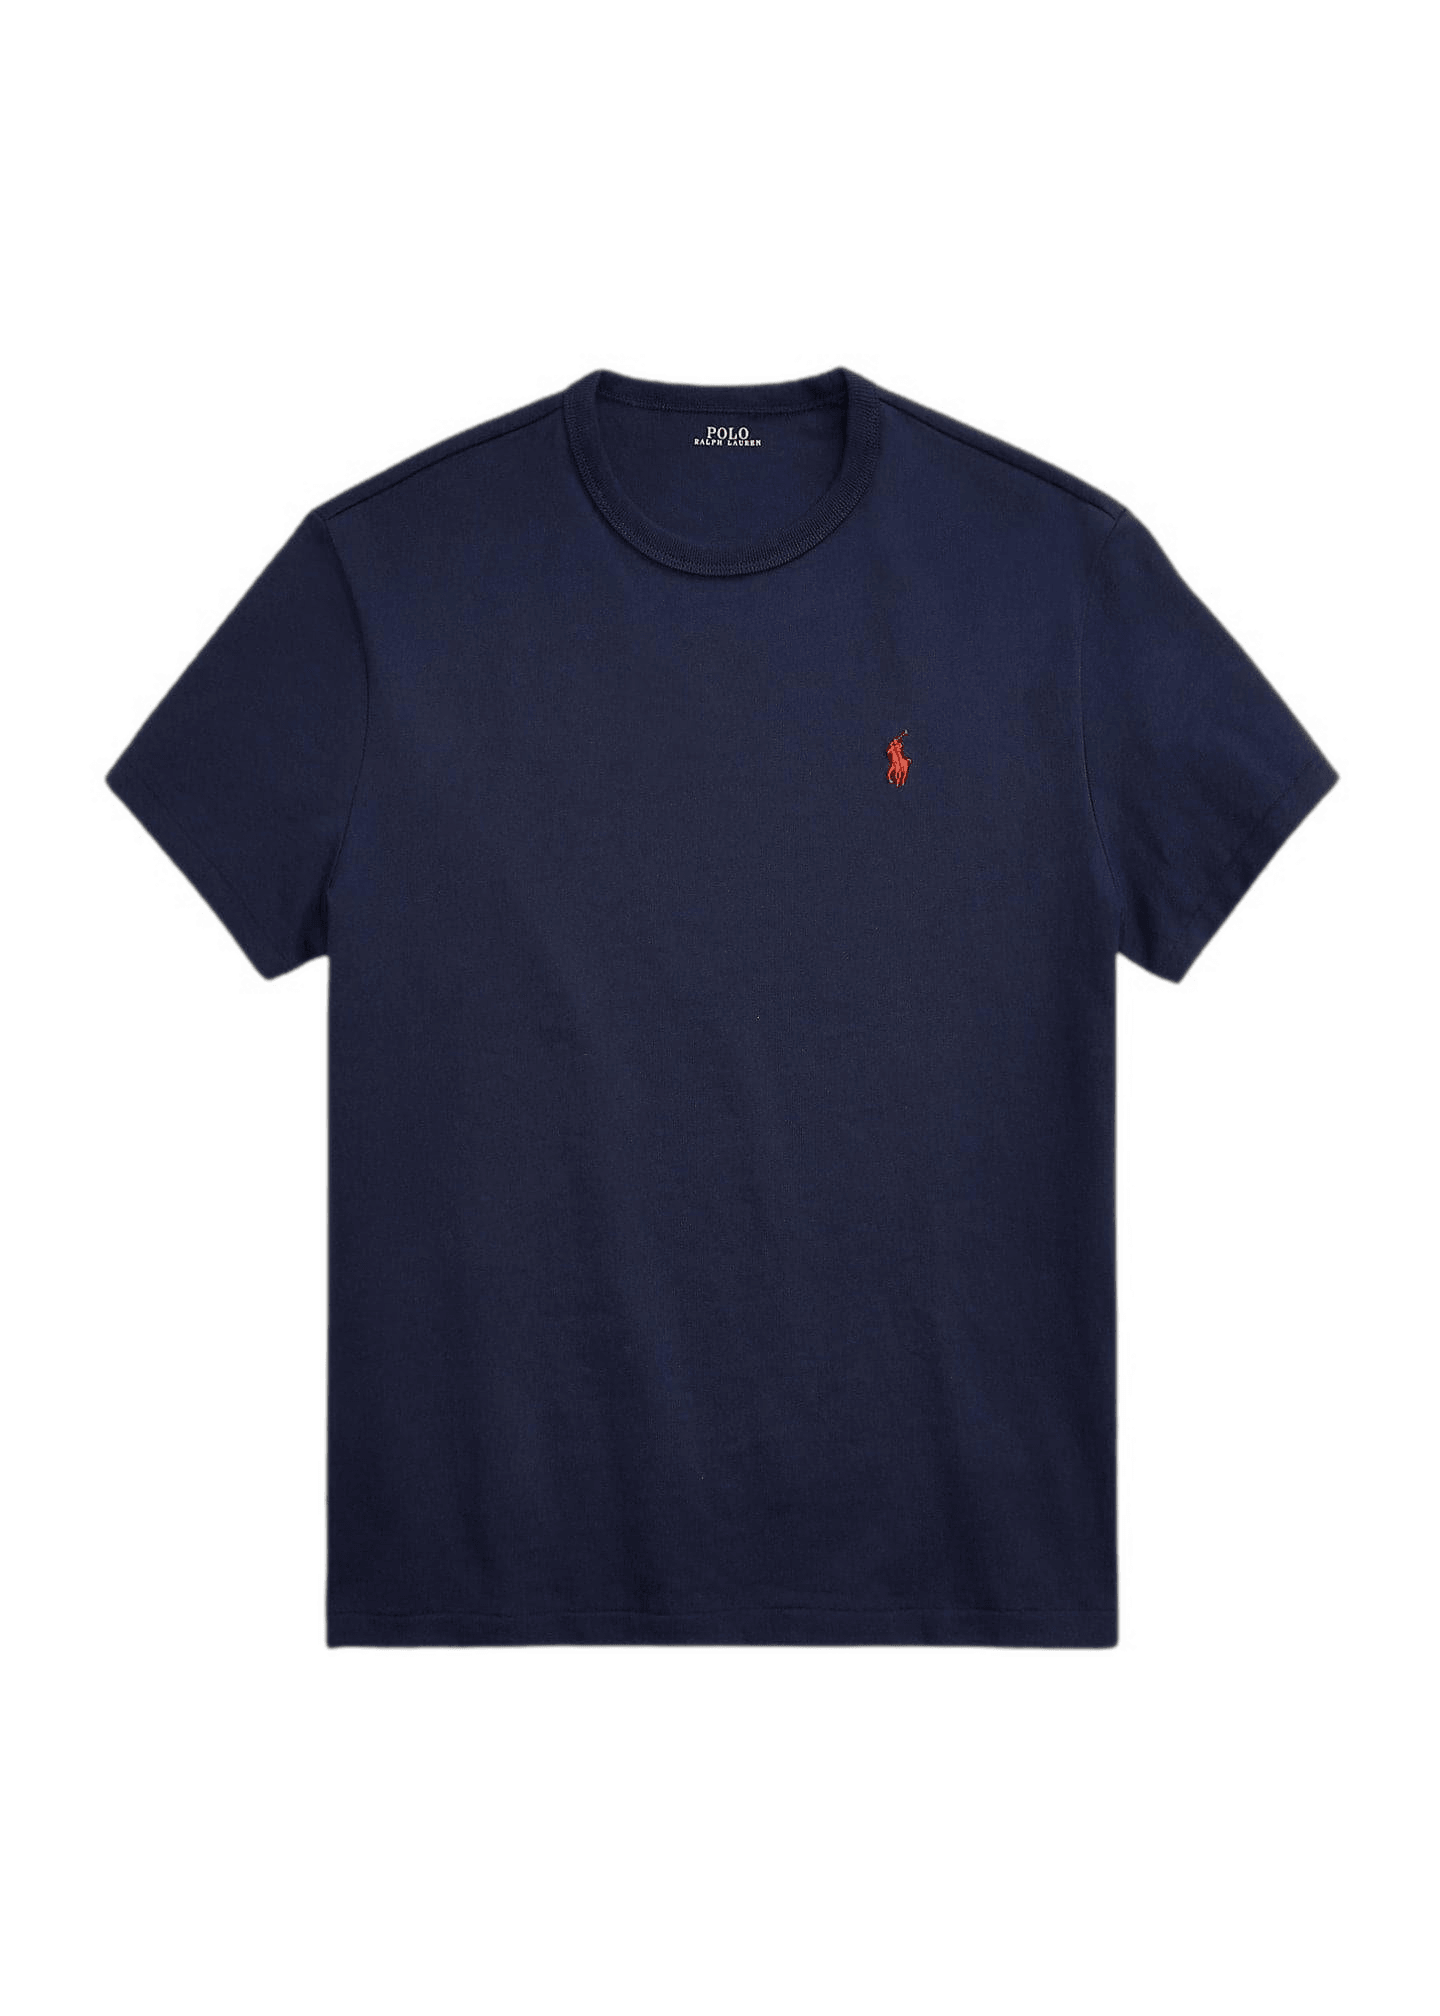 Laflamme- T-shirt de coton marine - Ralph lauren